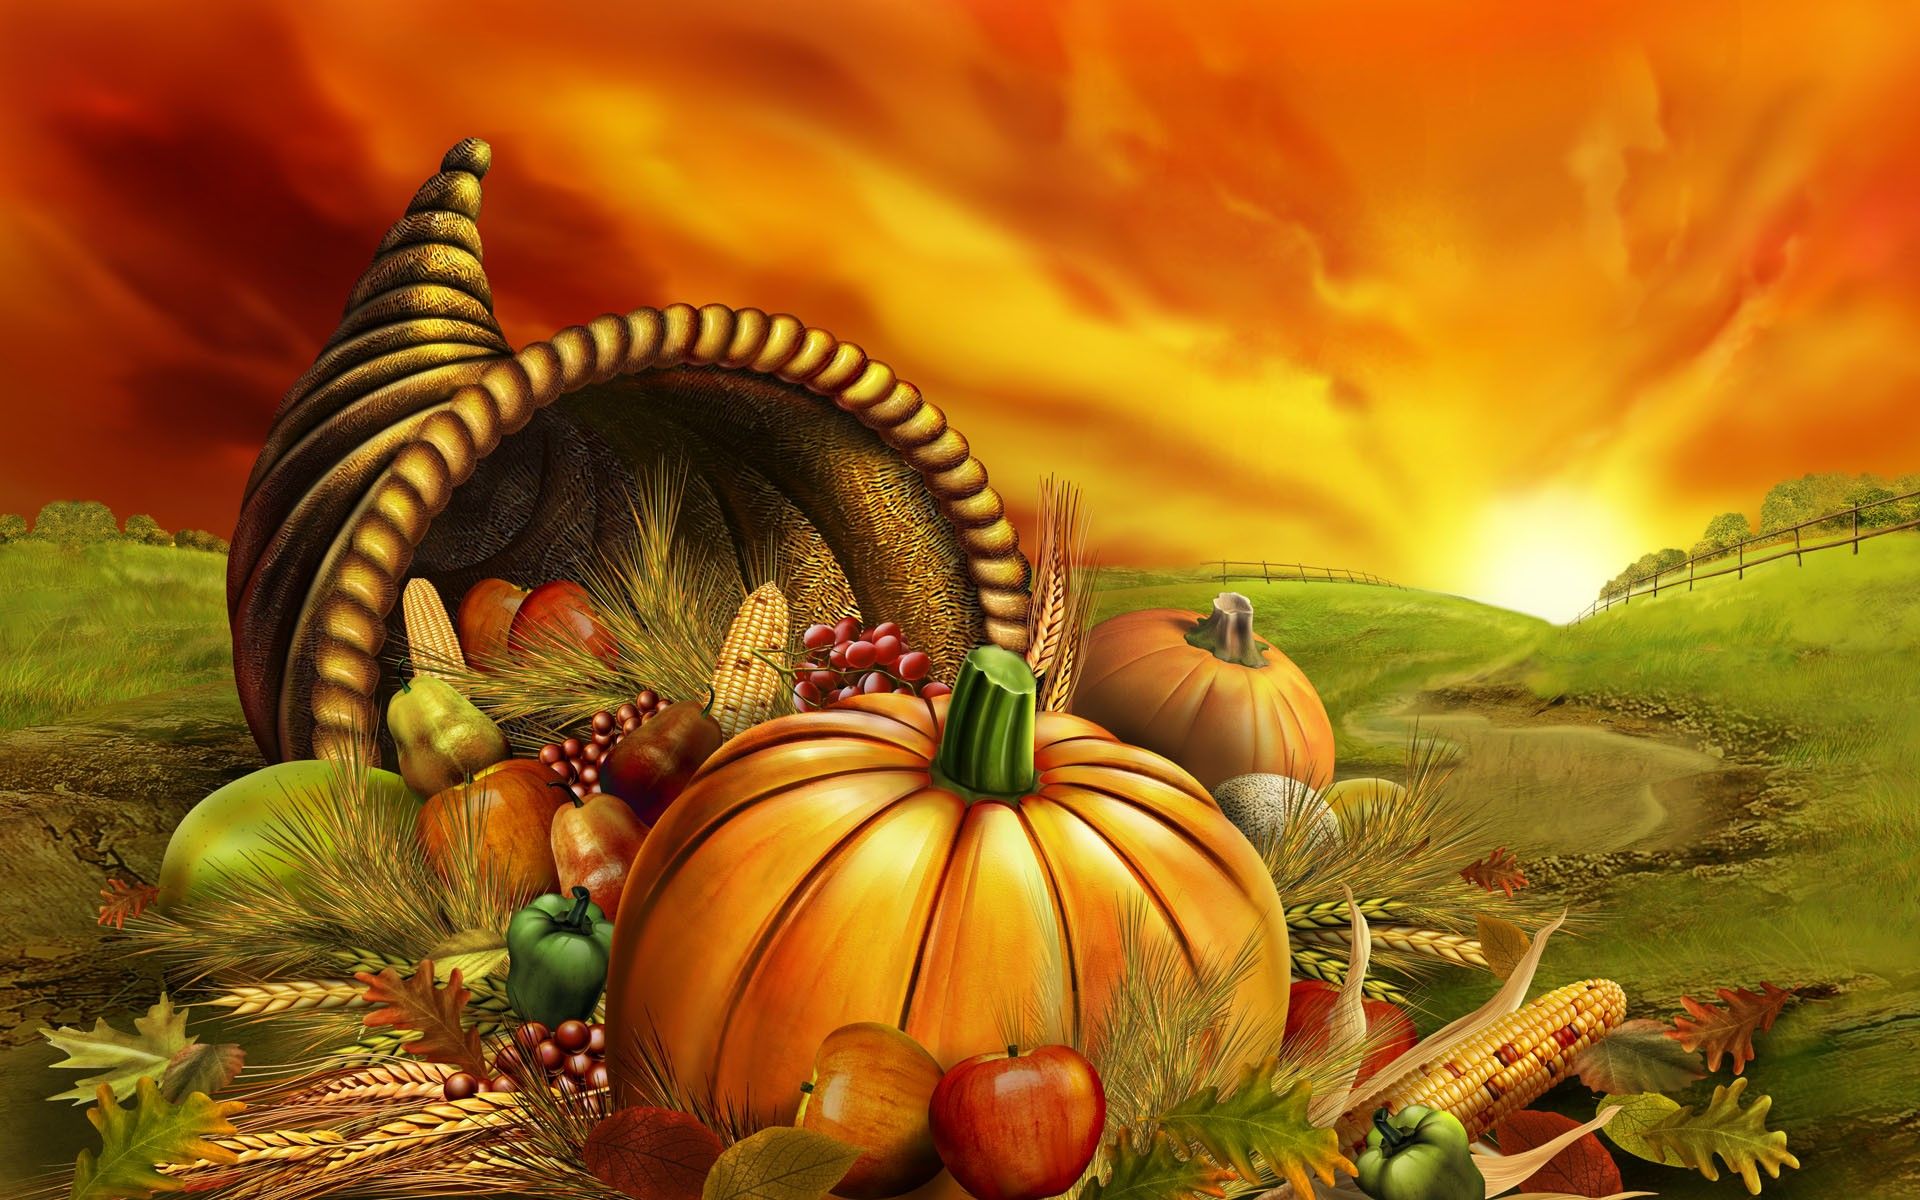 Pumpkin wallpaper desktop background thanksgiving free desktop background and wallpaper